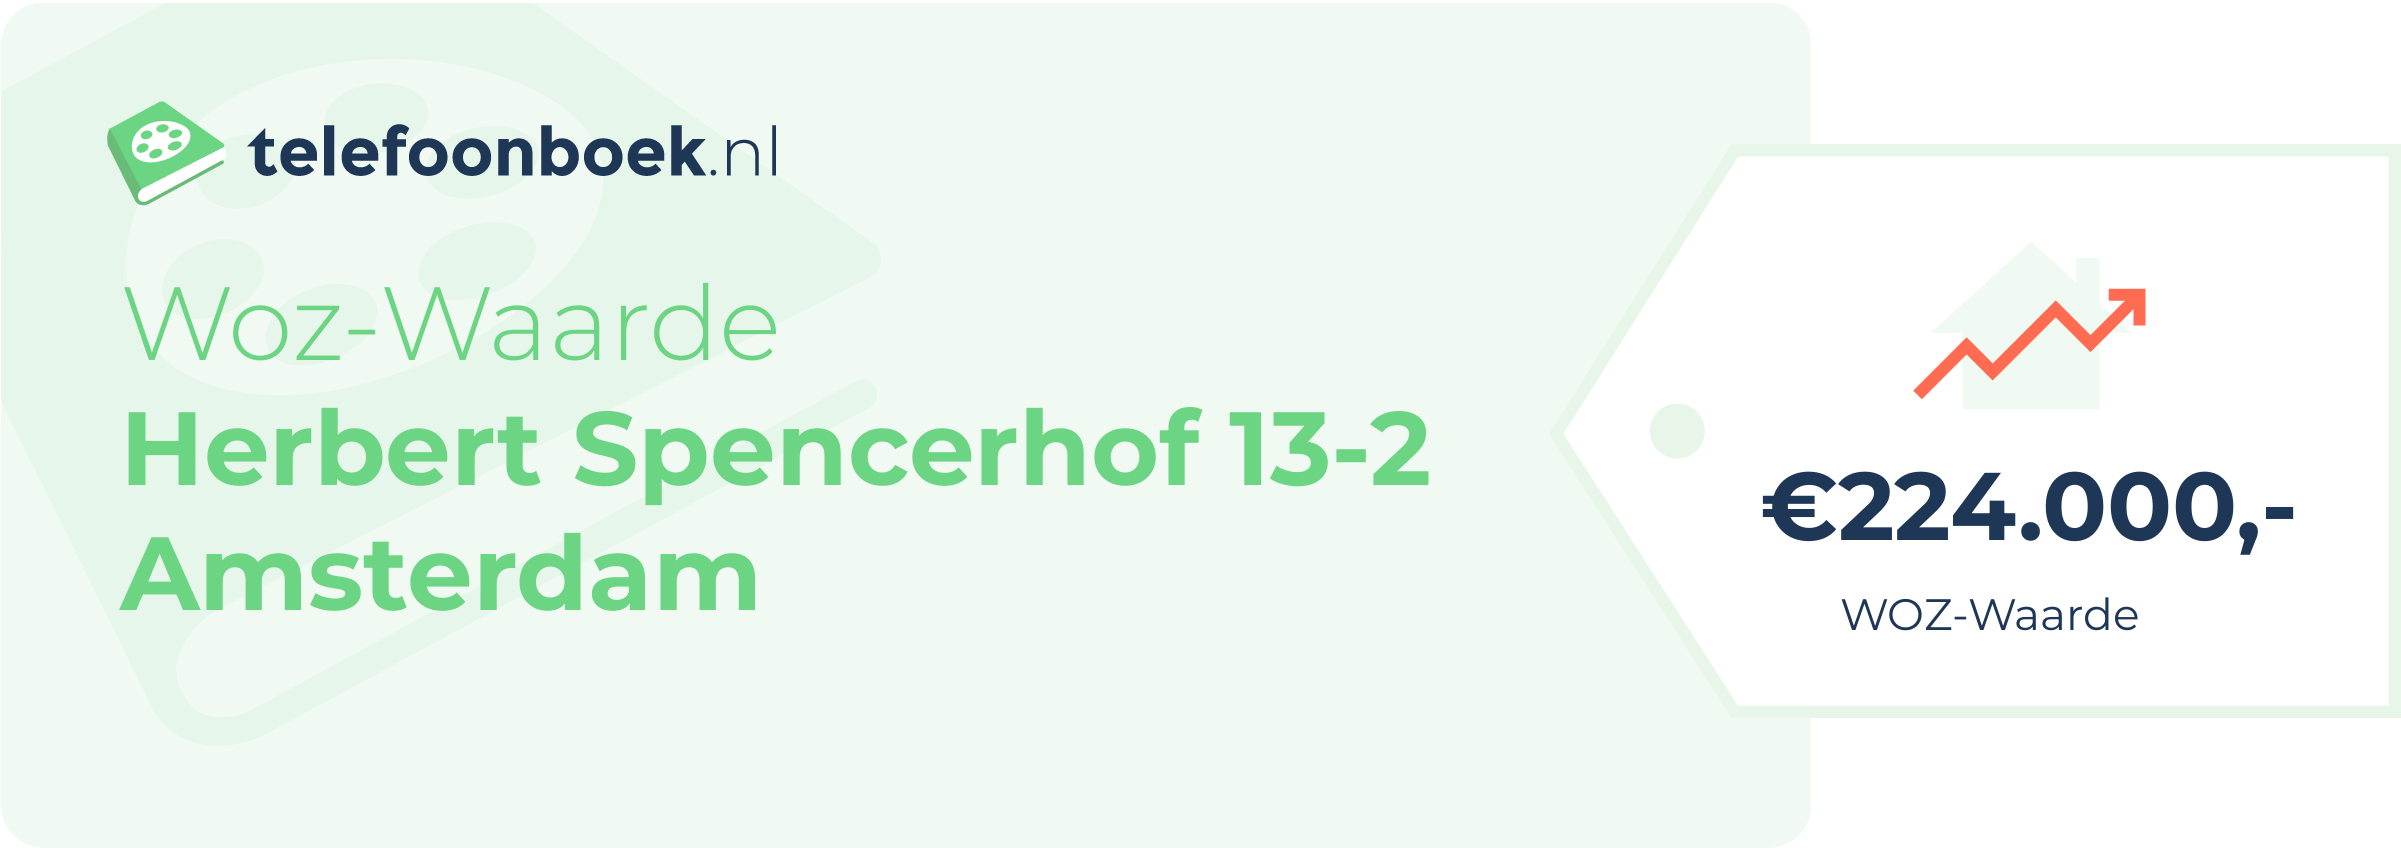 WOZ-waarde Herbert Spencerhof 13-2 Amsterdam